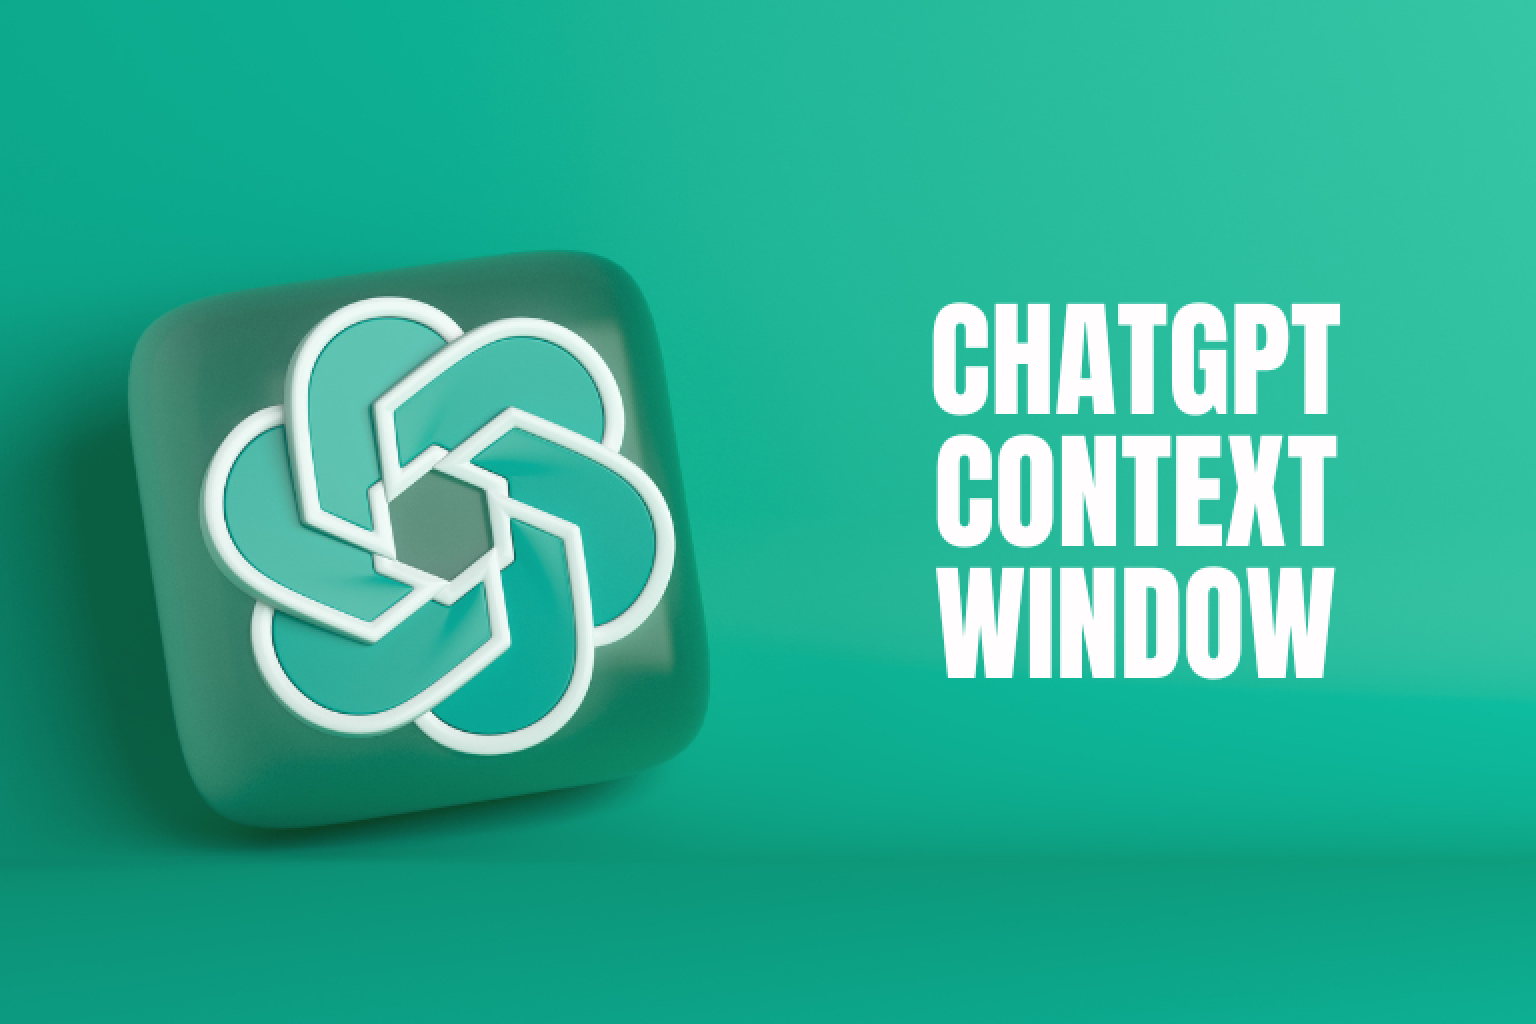 Tauchen Sie tief in die Welt des ChatGPT-Kontextfensters ein. Verstehen Sie seine Funktionsweise, Vorteile, Einschränkungen und wie Sie es nutzen können, um ansprechendere und intelligentere Chatbots zu erstellen.